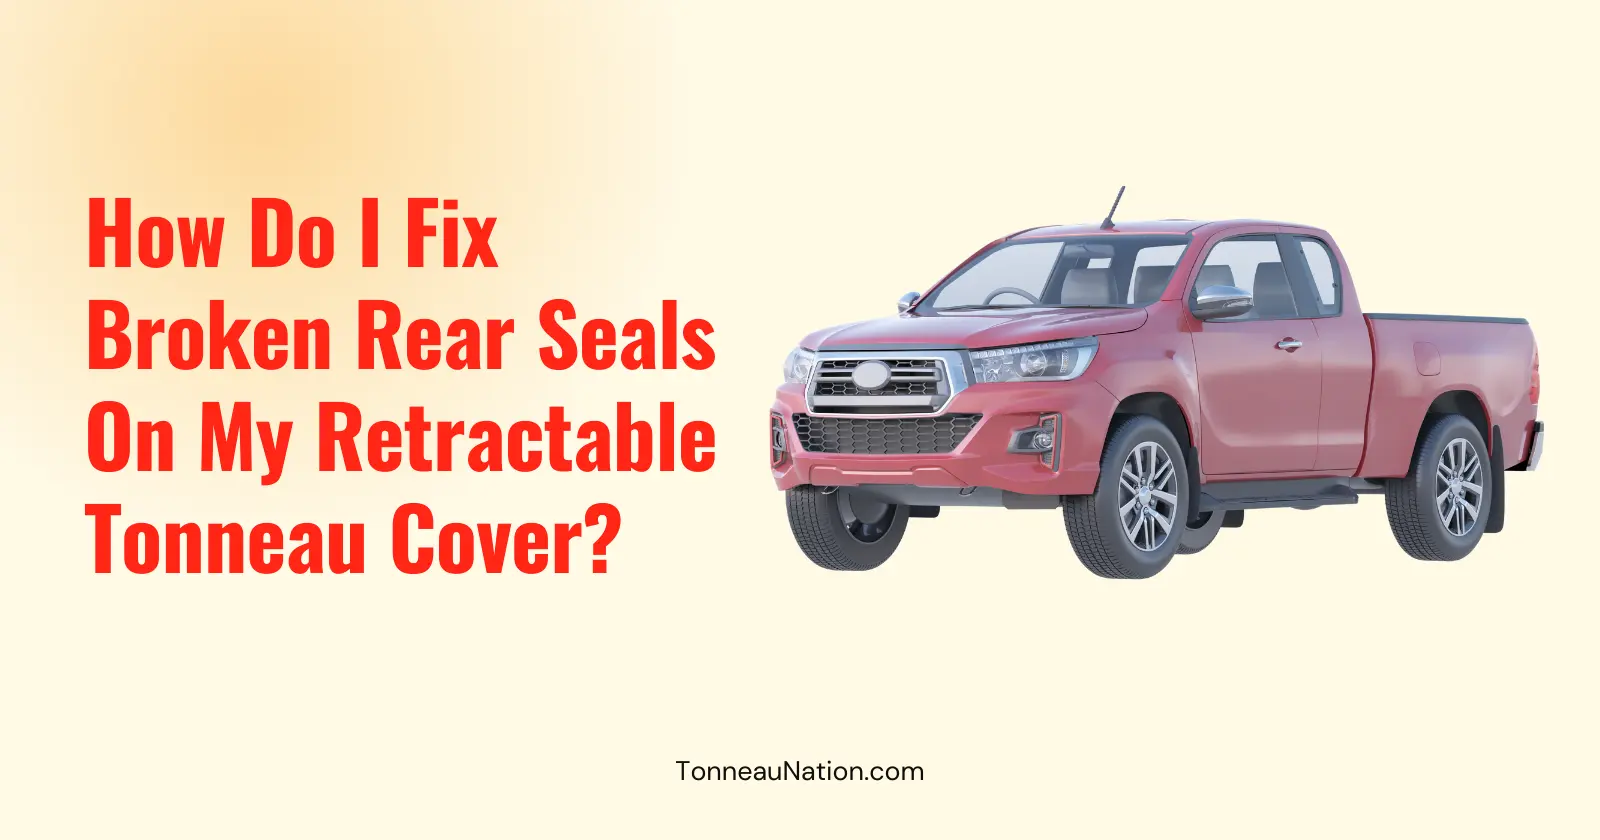 Fix Broken Rear Seals Retractable Tonneau